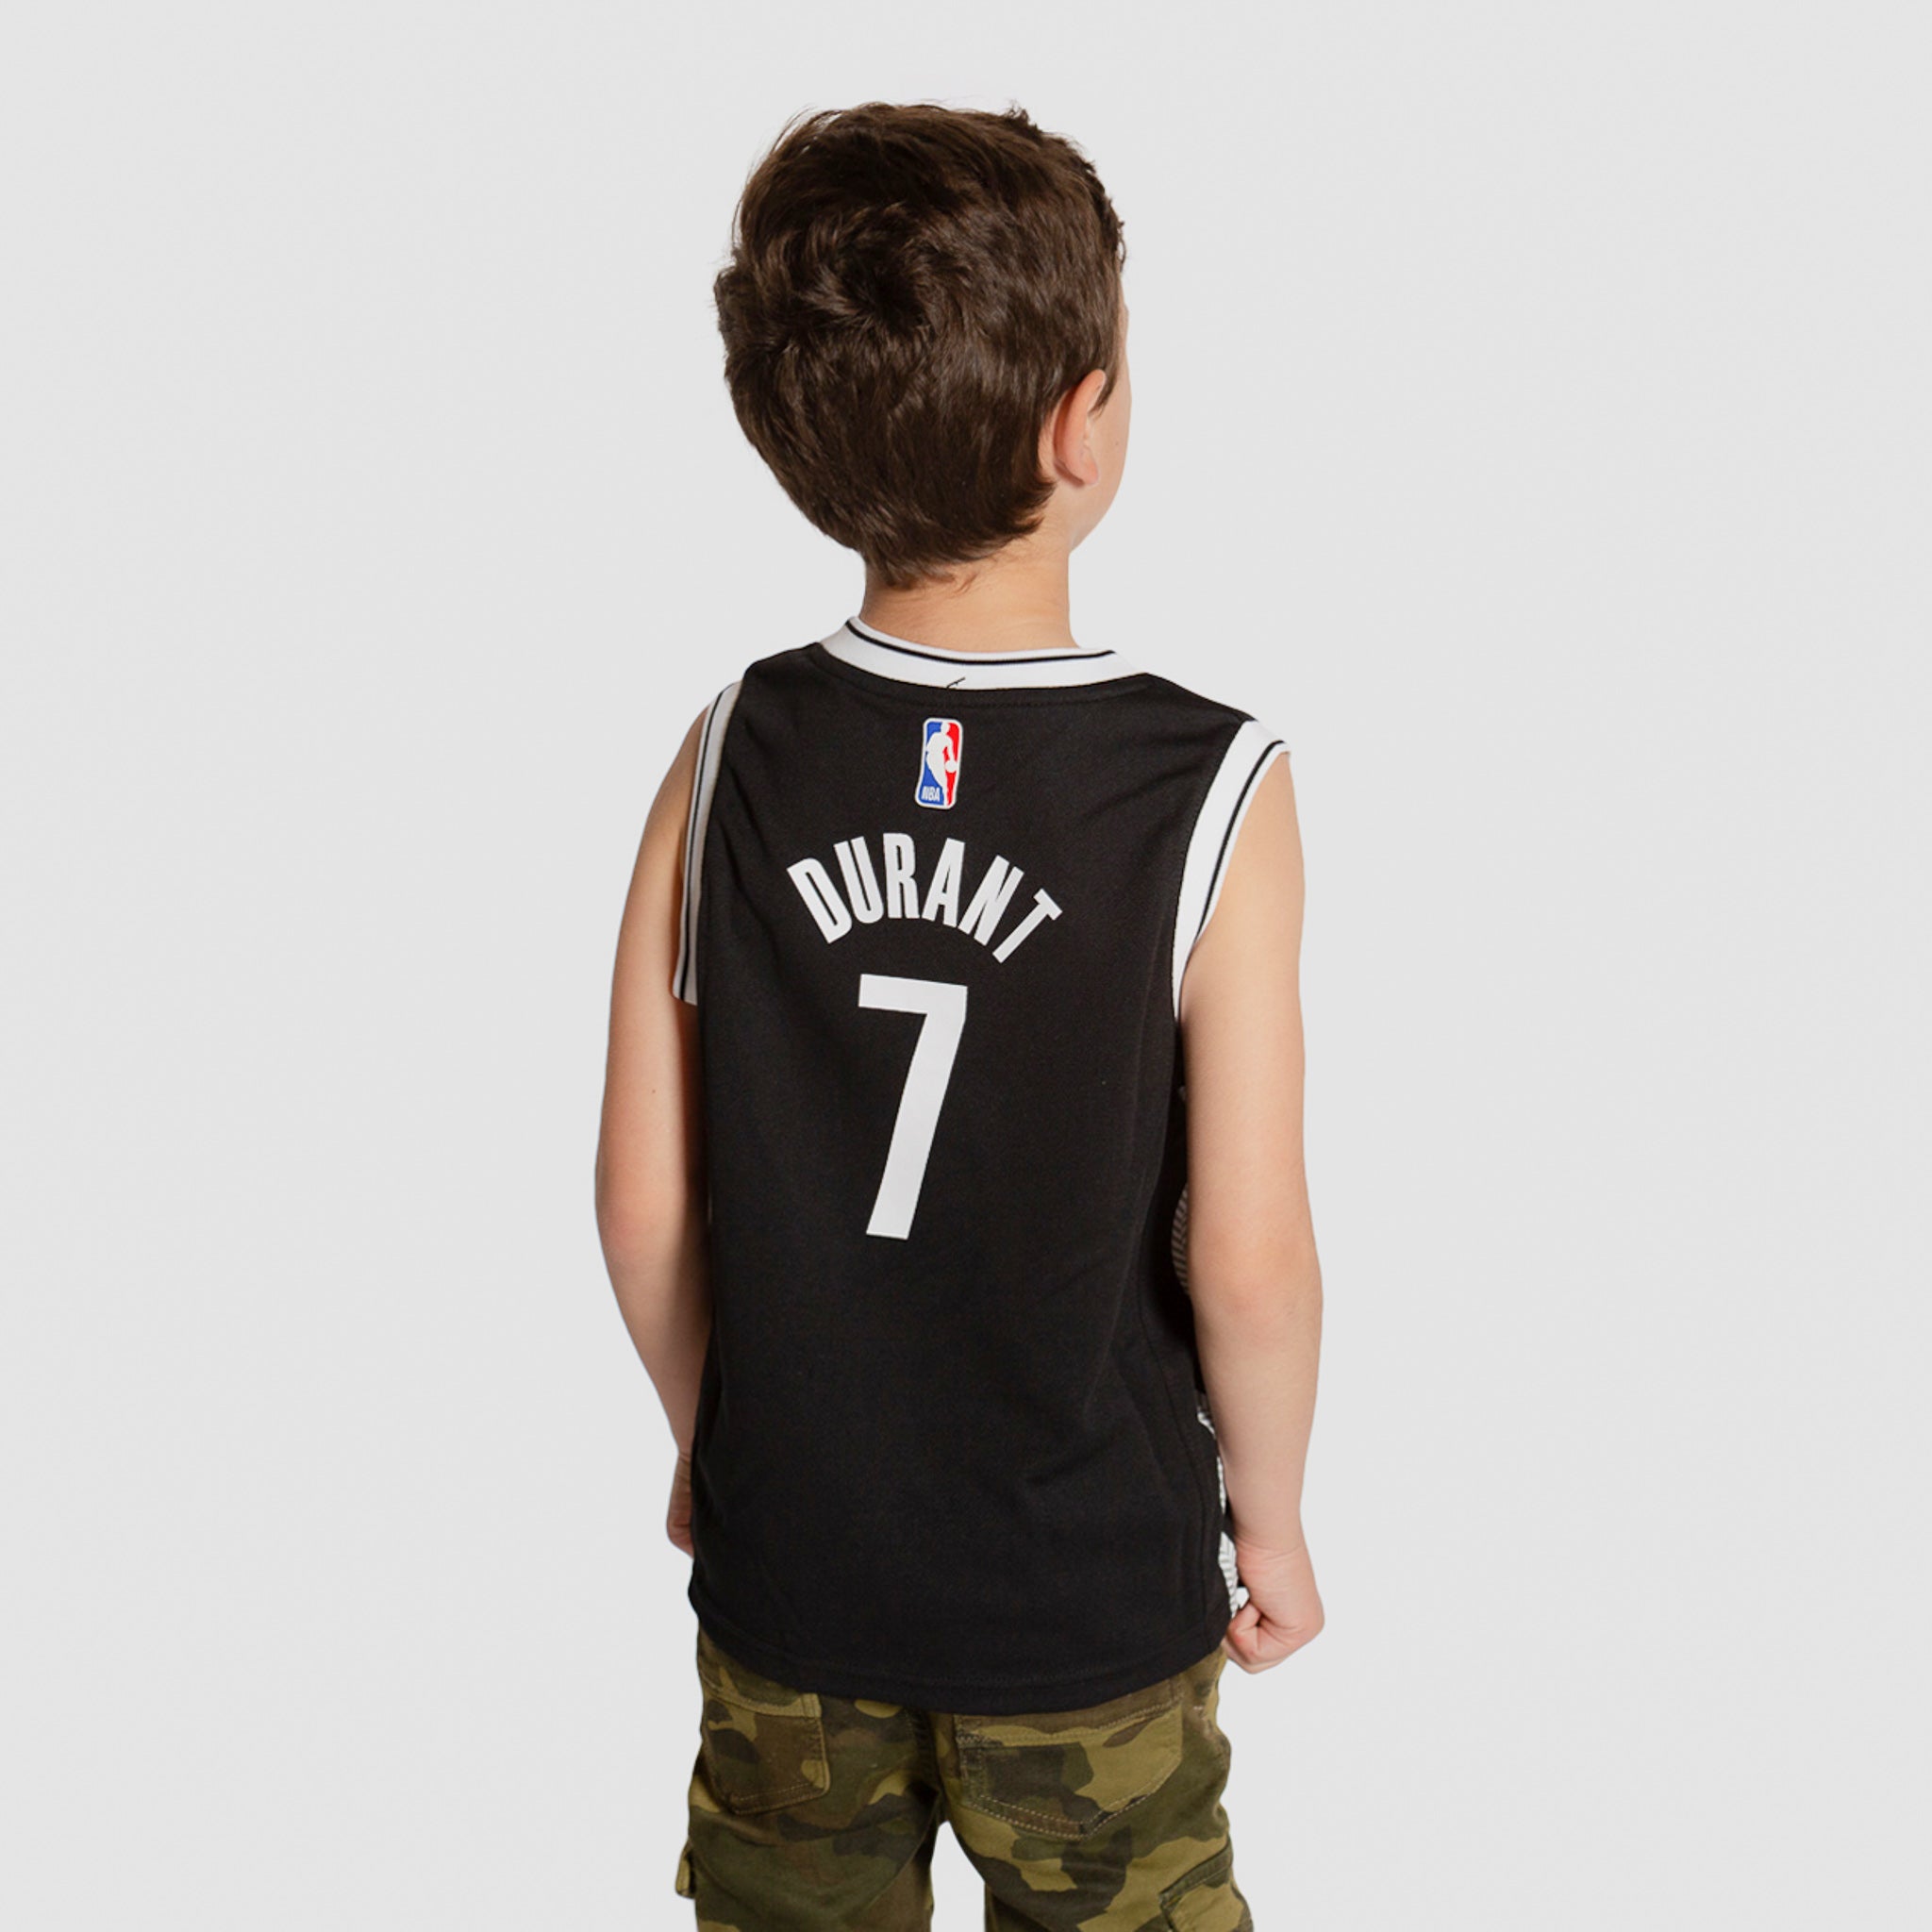 Boys Brooklyn Nets NBA Jerseys for sale